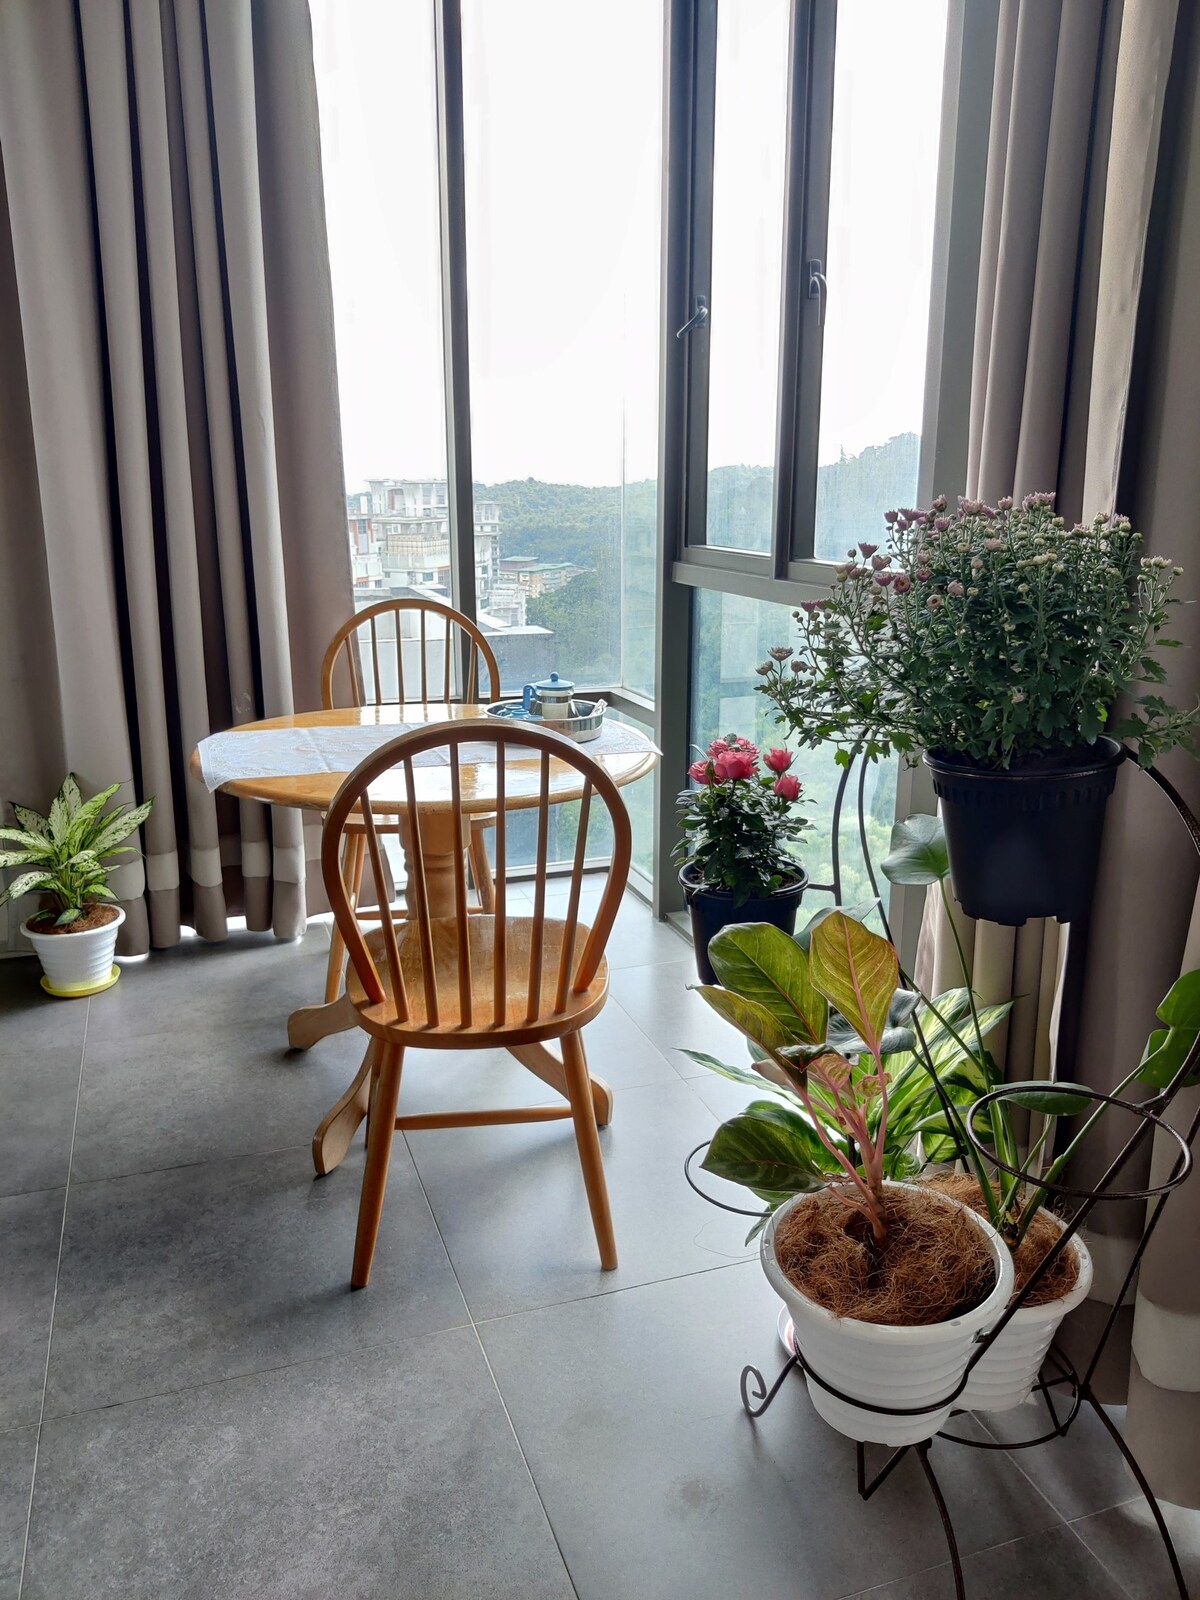 AVA Empire Damansara平静的单间公寓迷人景观